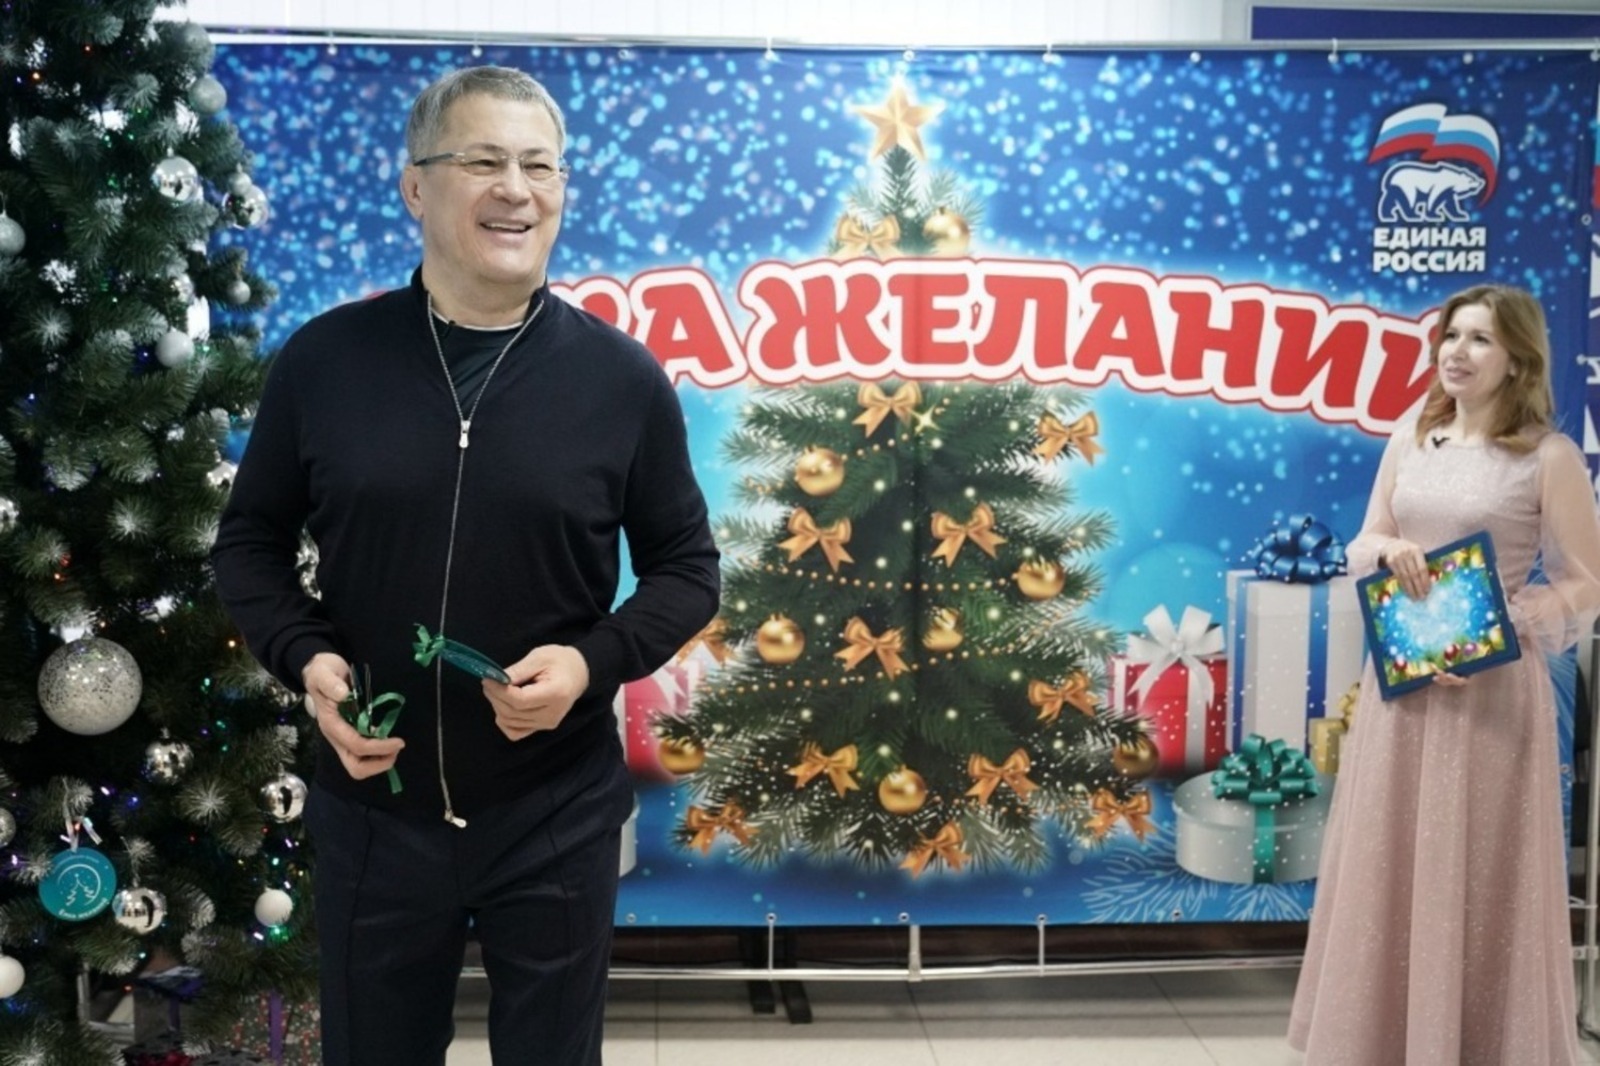 В новом году исполнились самые заветные желания ребят из Башкирии